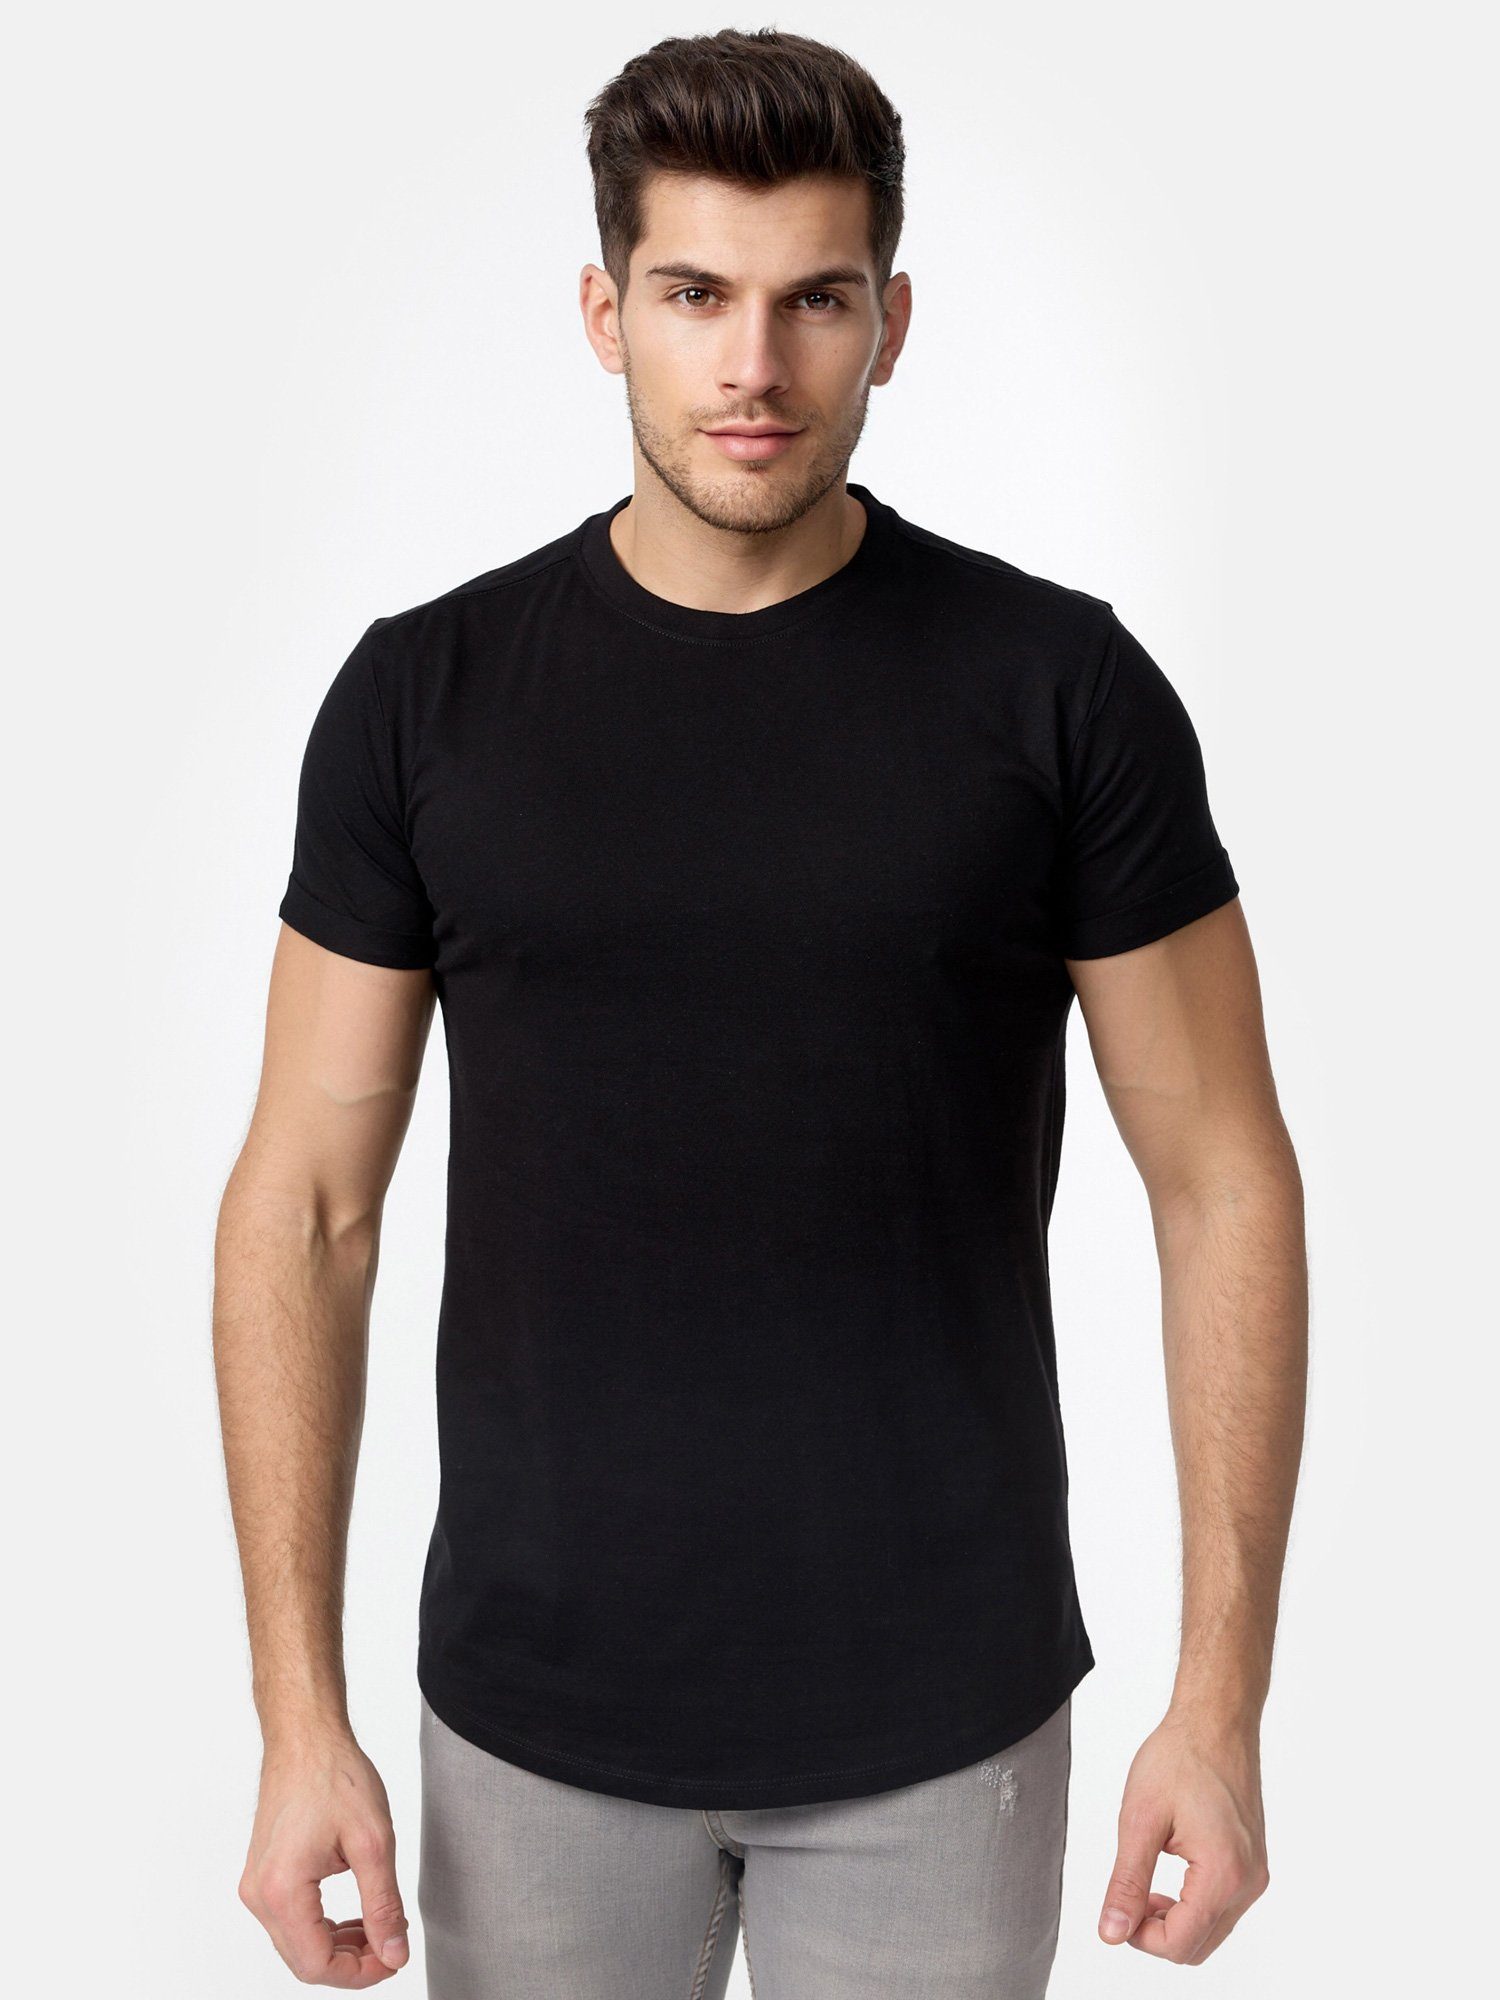 Tazzio T-Shirt E105 Herren Basic Rundhalsshirt